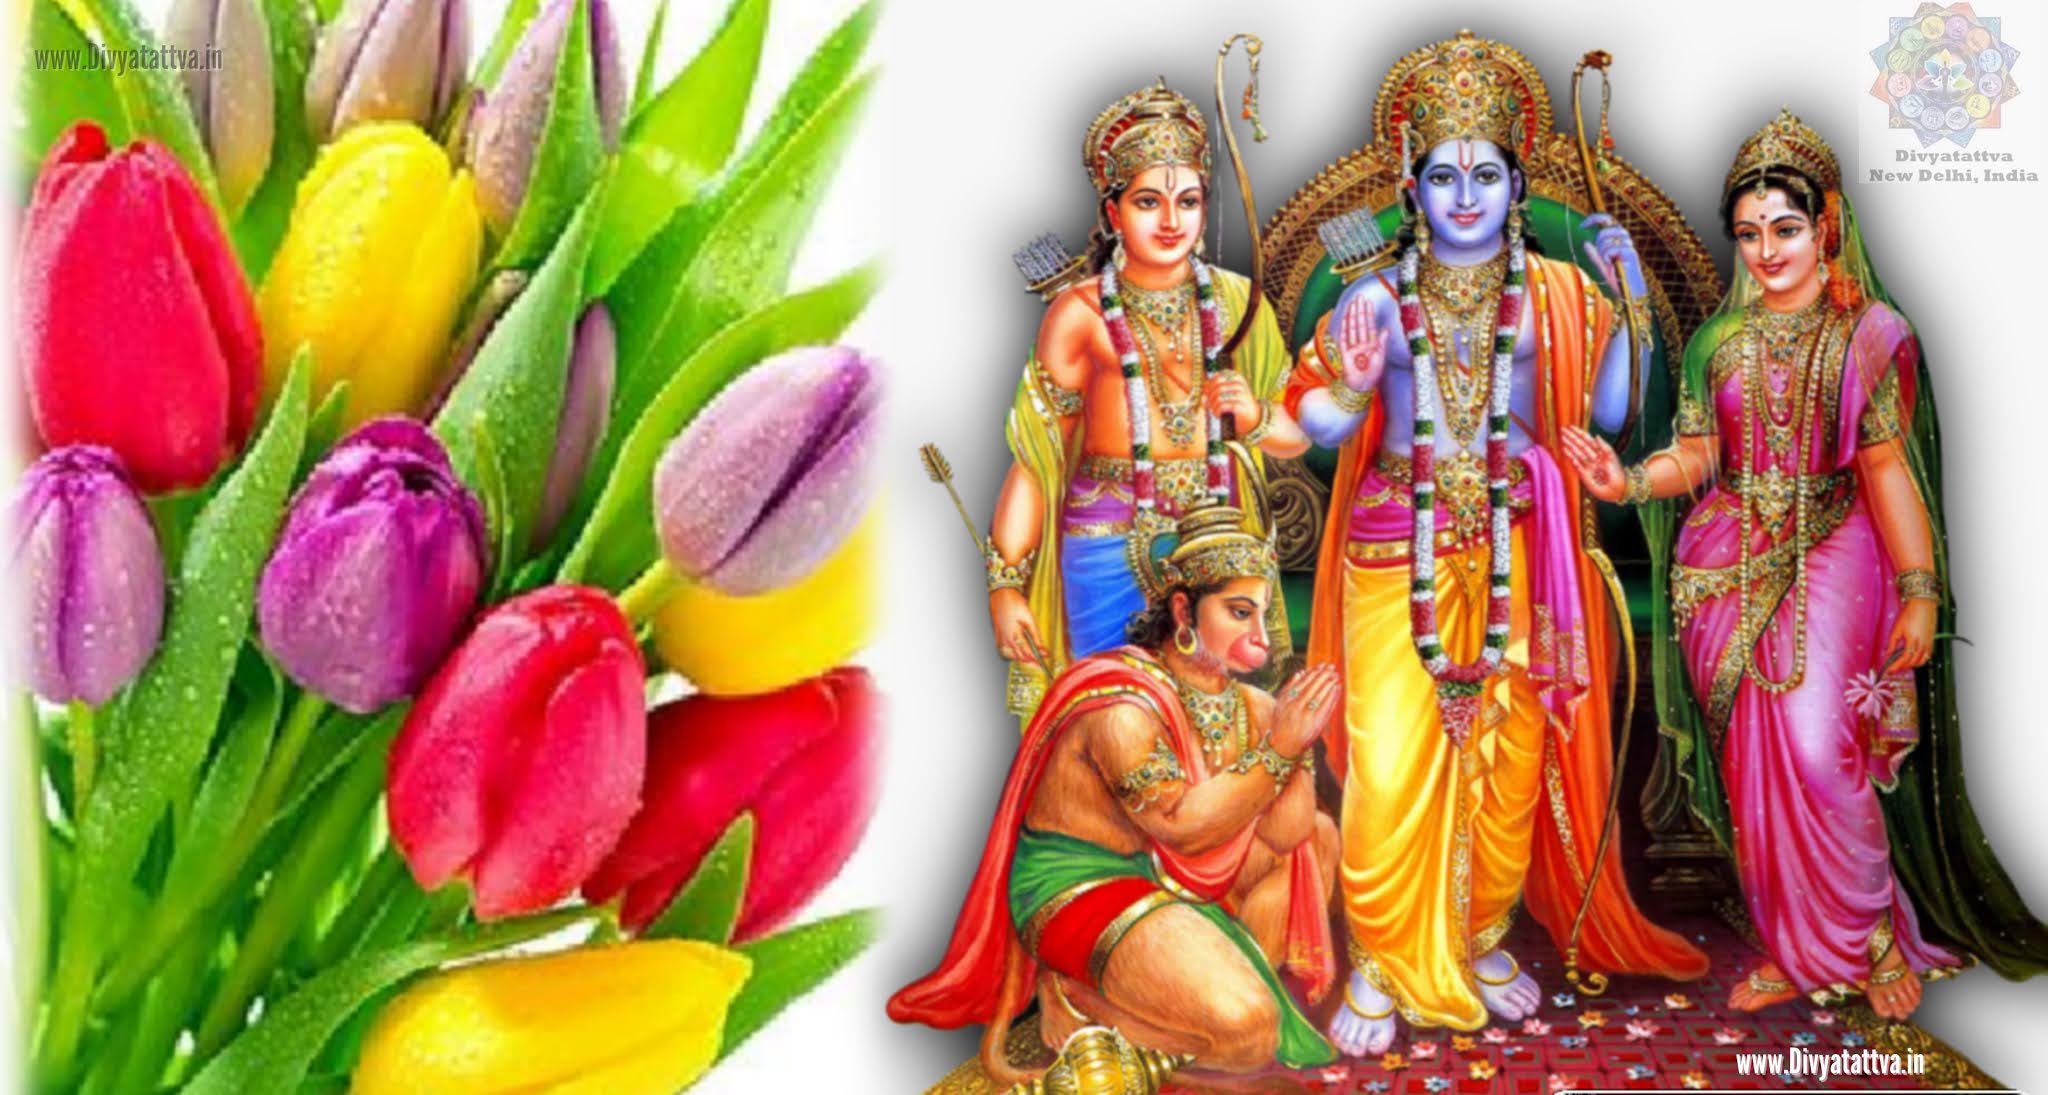 Rama Sita Wallpaper 4K HD, Hindu Gods, Rama Sita Hanuman Images, Ram Bhagwan jai shree ram images  sri rama navami pictures, shri ram photos, lakshman